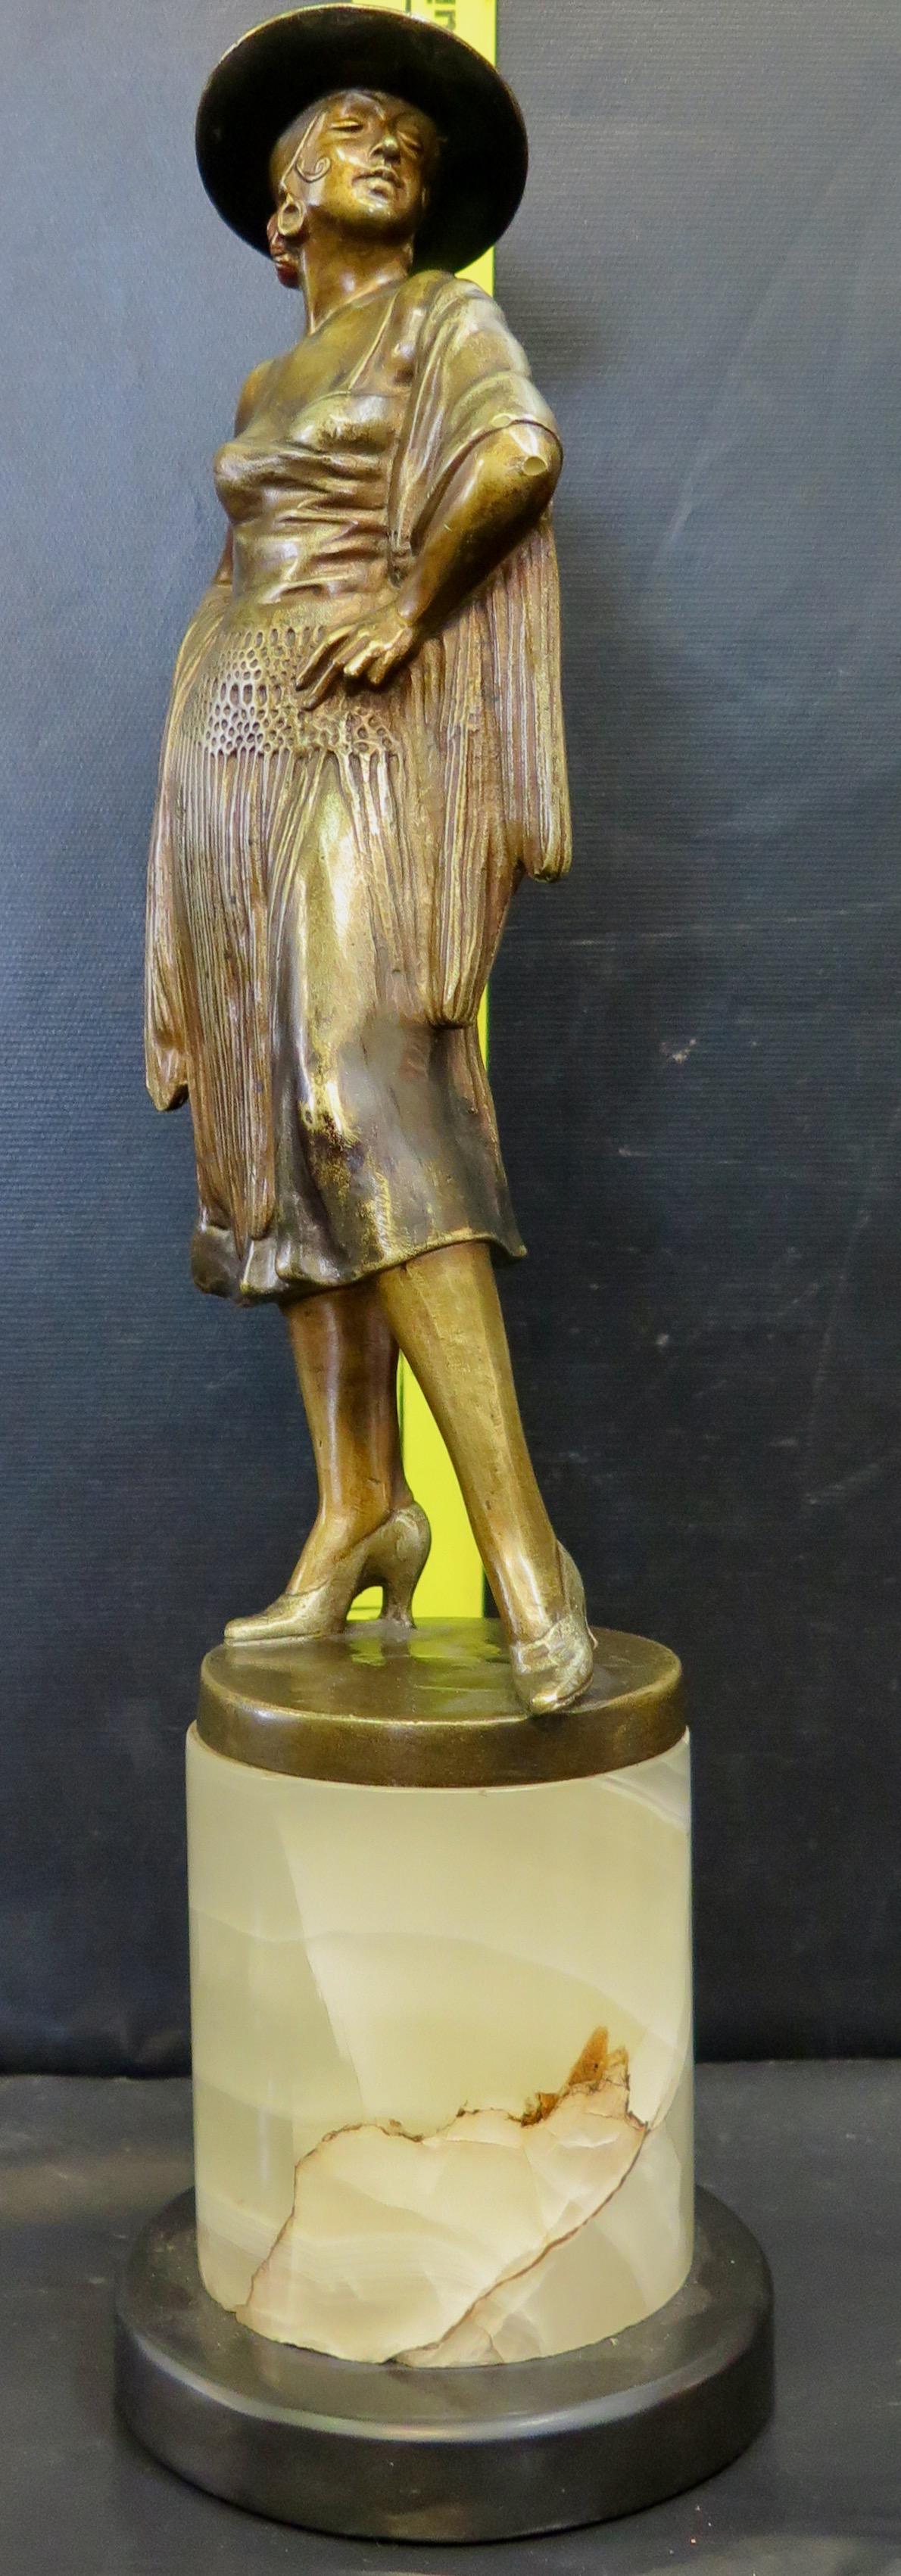 Una splendida scultura vintage in bronzo patinato Art Deco. Si tratta di una statua di una ballerina di flamenco splendidamente vestita e dettagliata e contiene alcuni elementi dipinti a freddo. Il bronzo è opera di Bruno Zach (alias Barner), uno